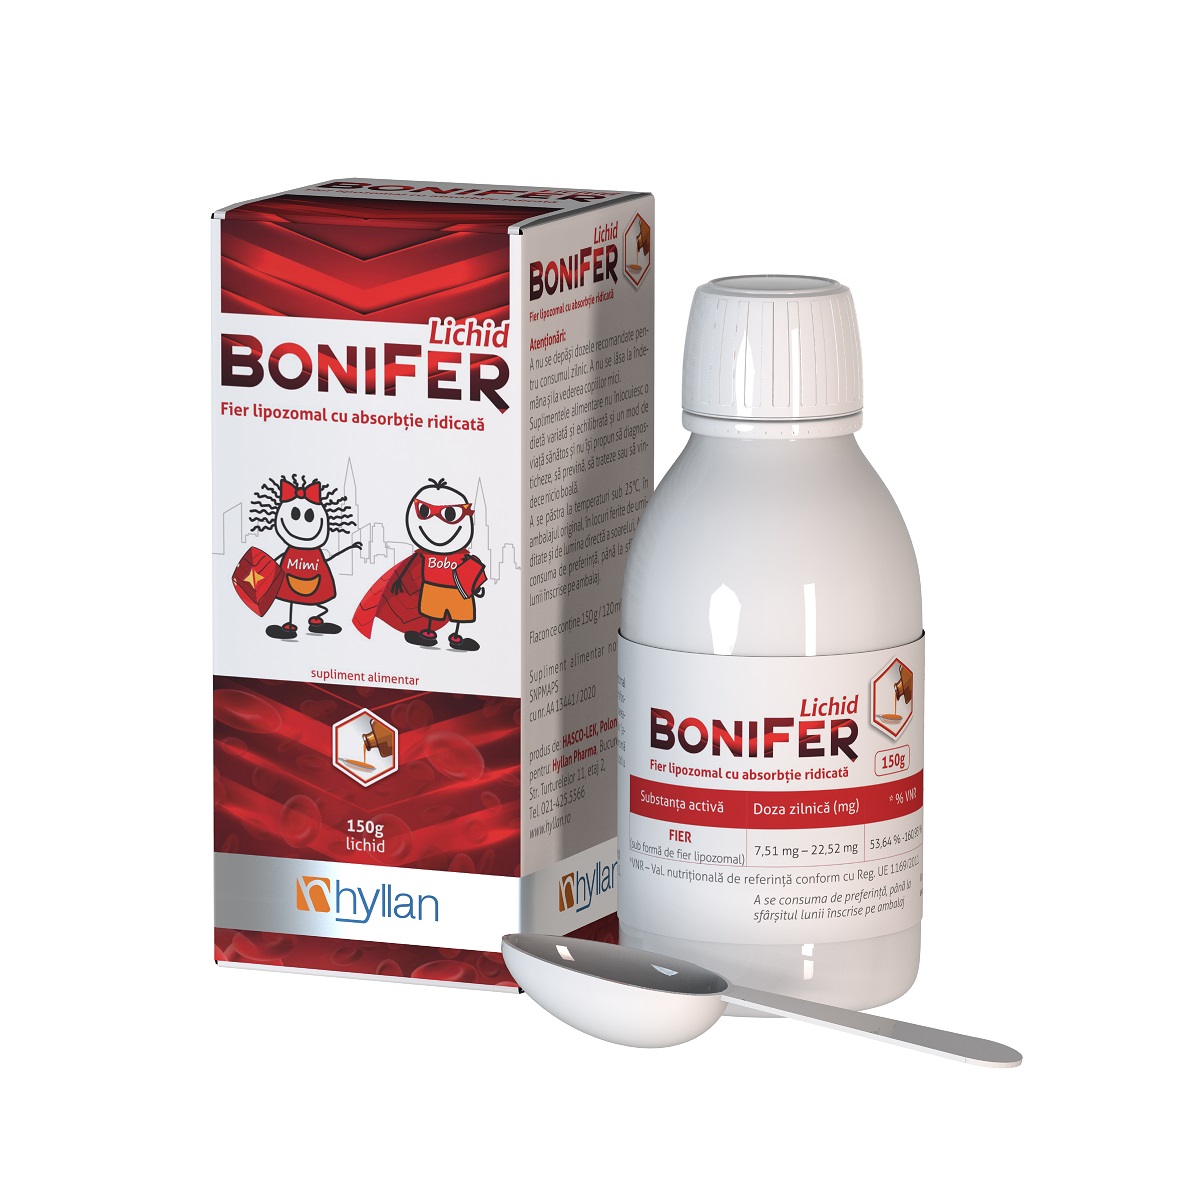 BoniFer sirop, 120 ml, Hyllan